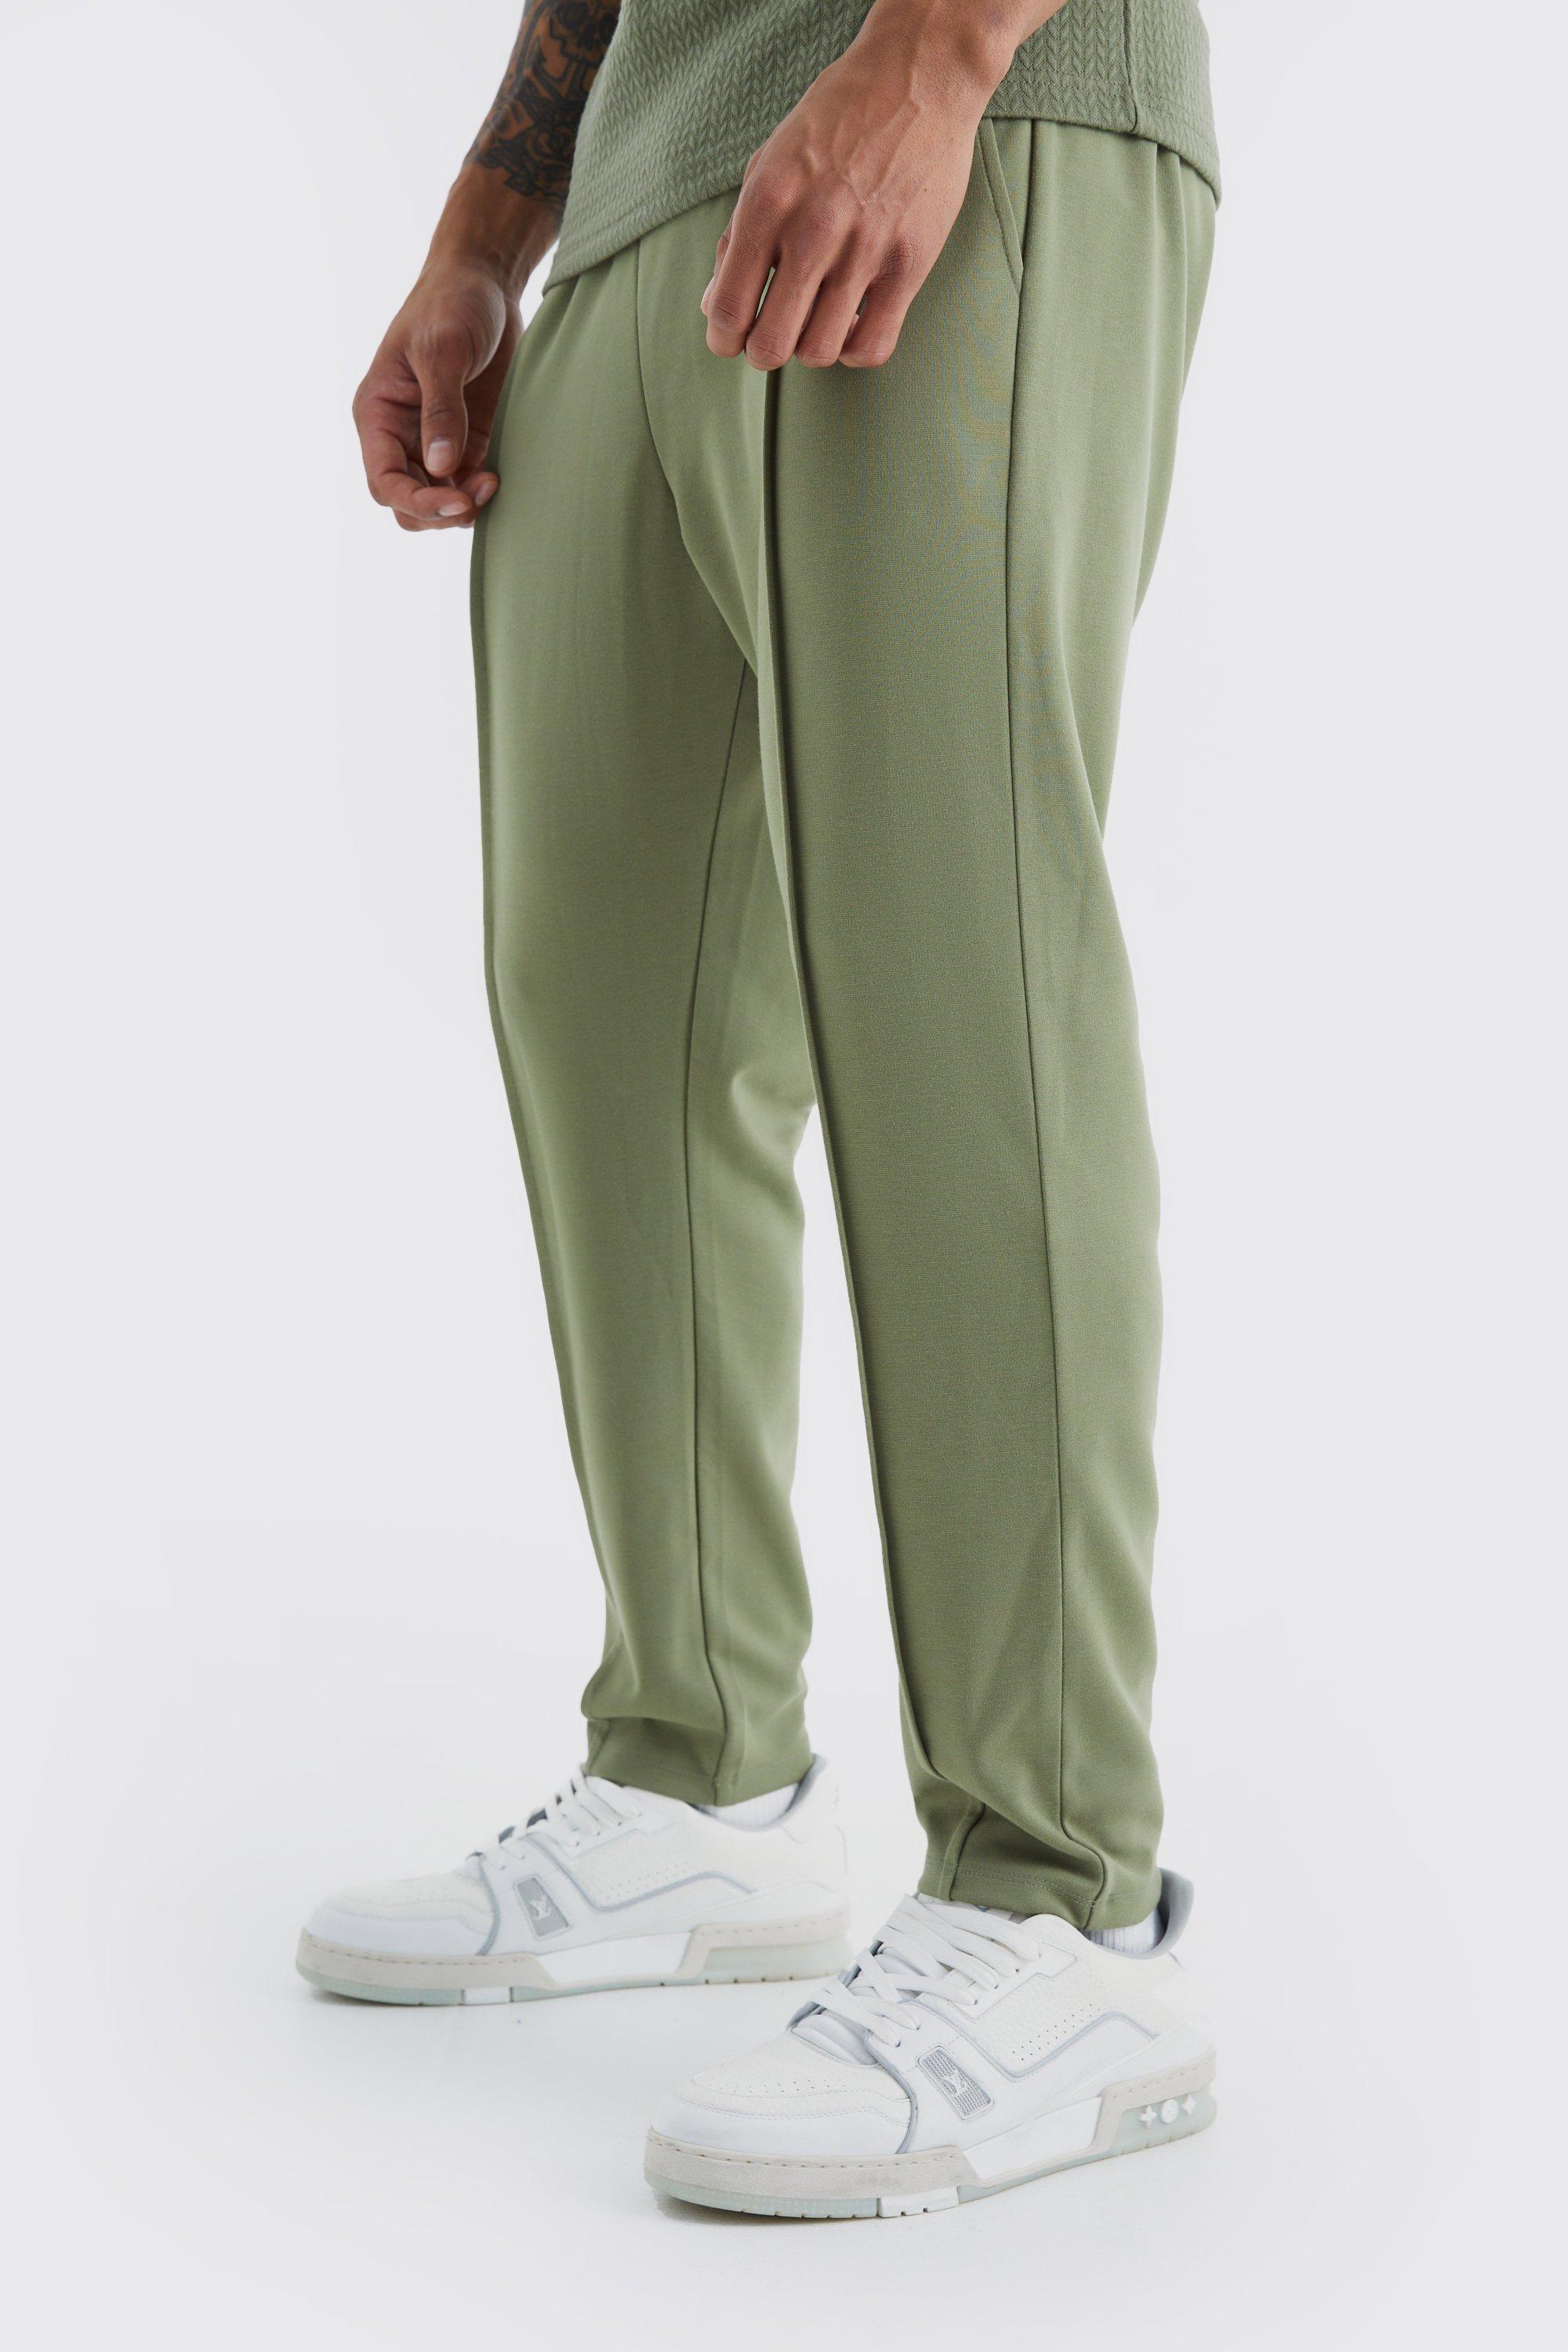 Image of Pantaloni tuta alla caviglia affusolati Slim Fit con nervature e vita elasticizzata, Verde